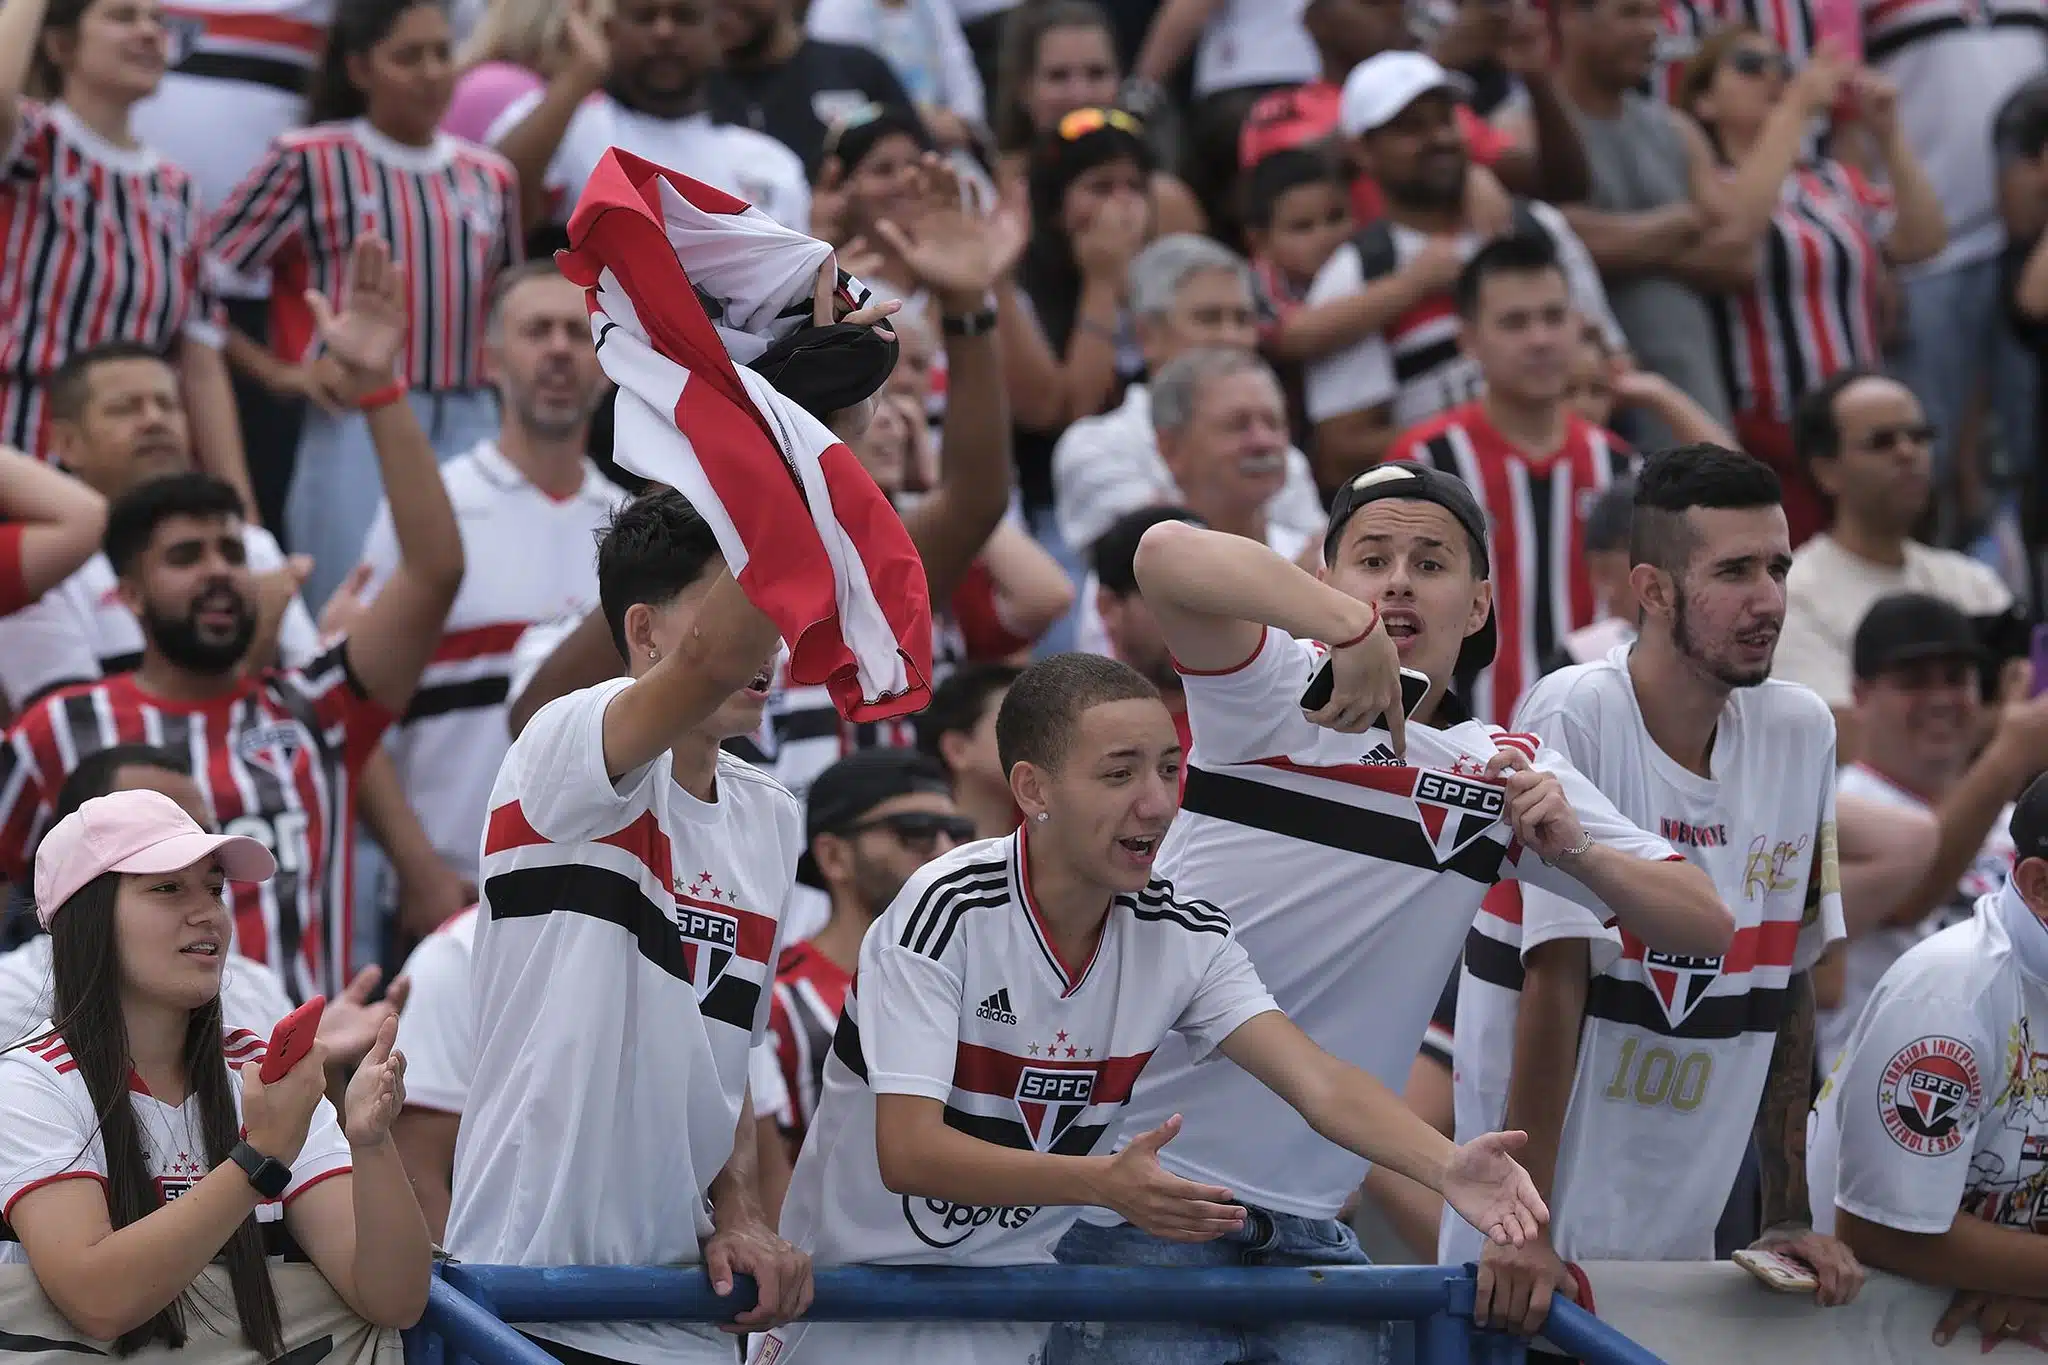 Torcida do São Paulo vibra com o time em vitória fora de casa; confira o vídeo